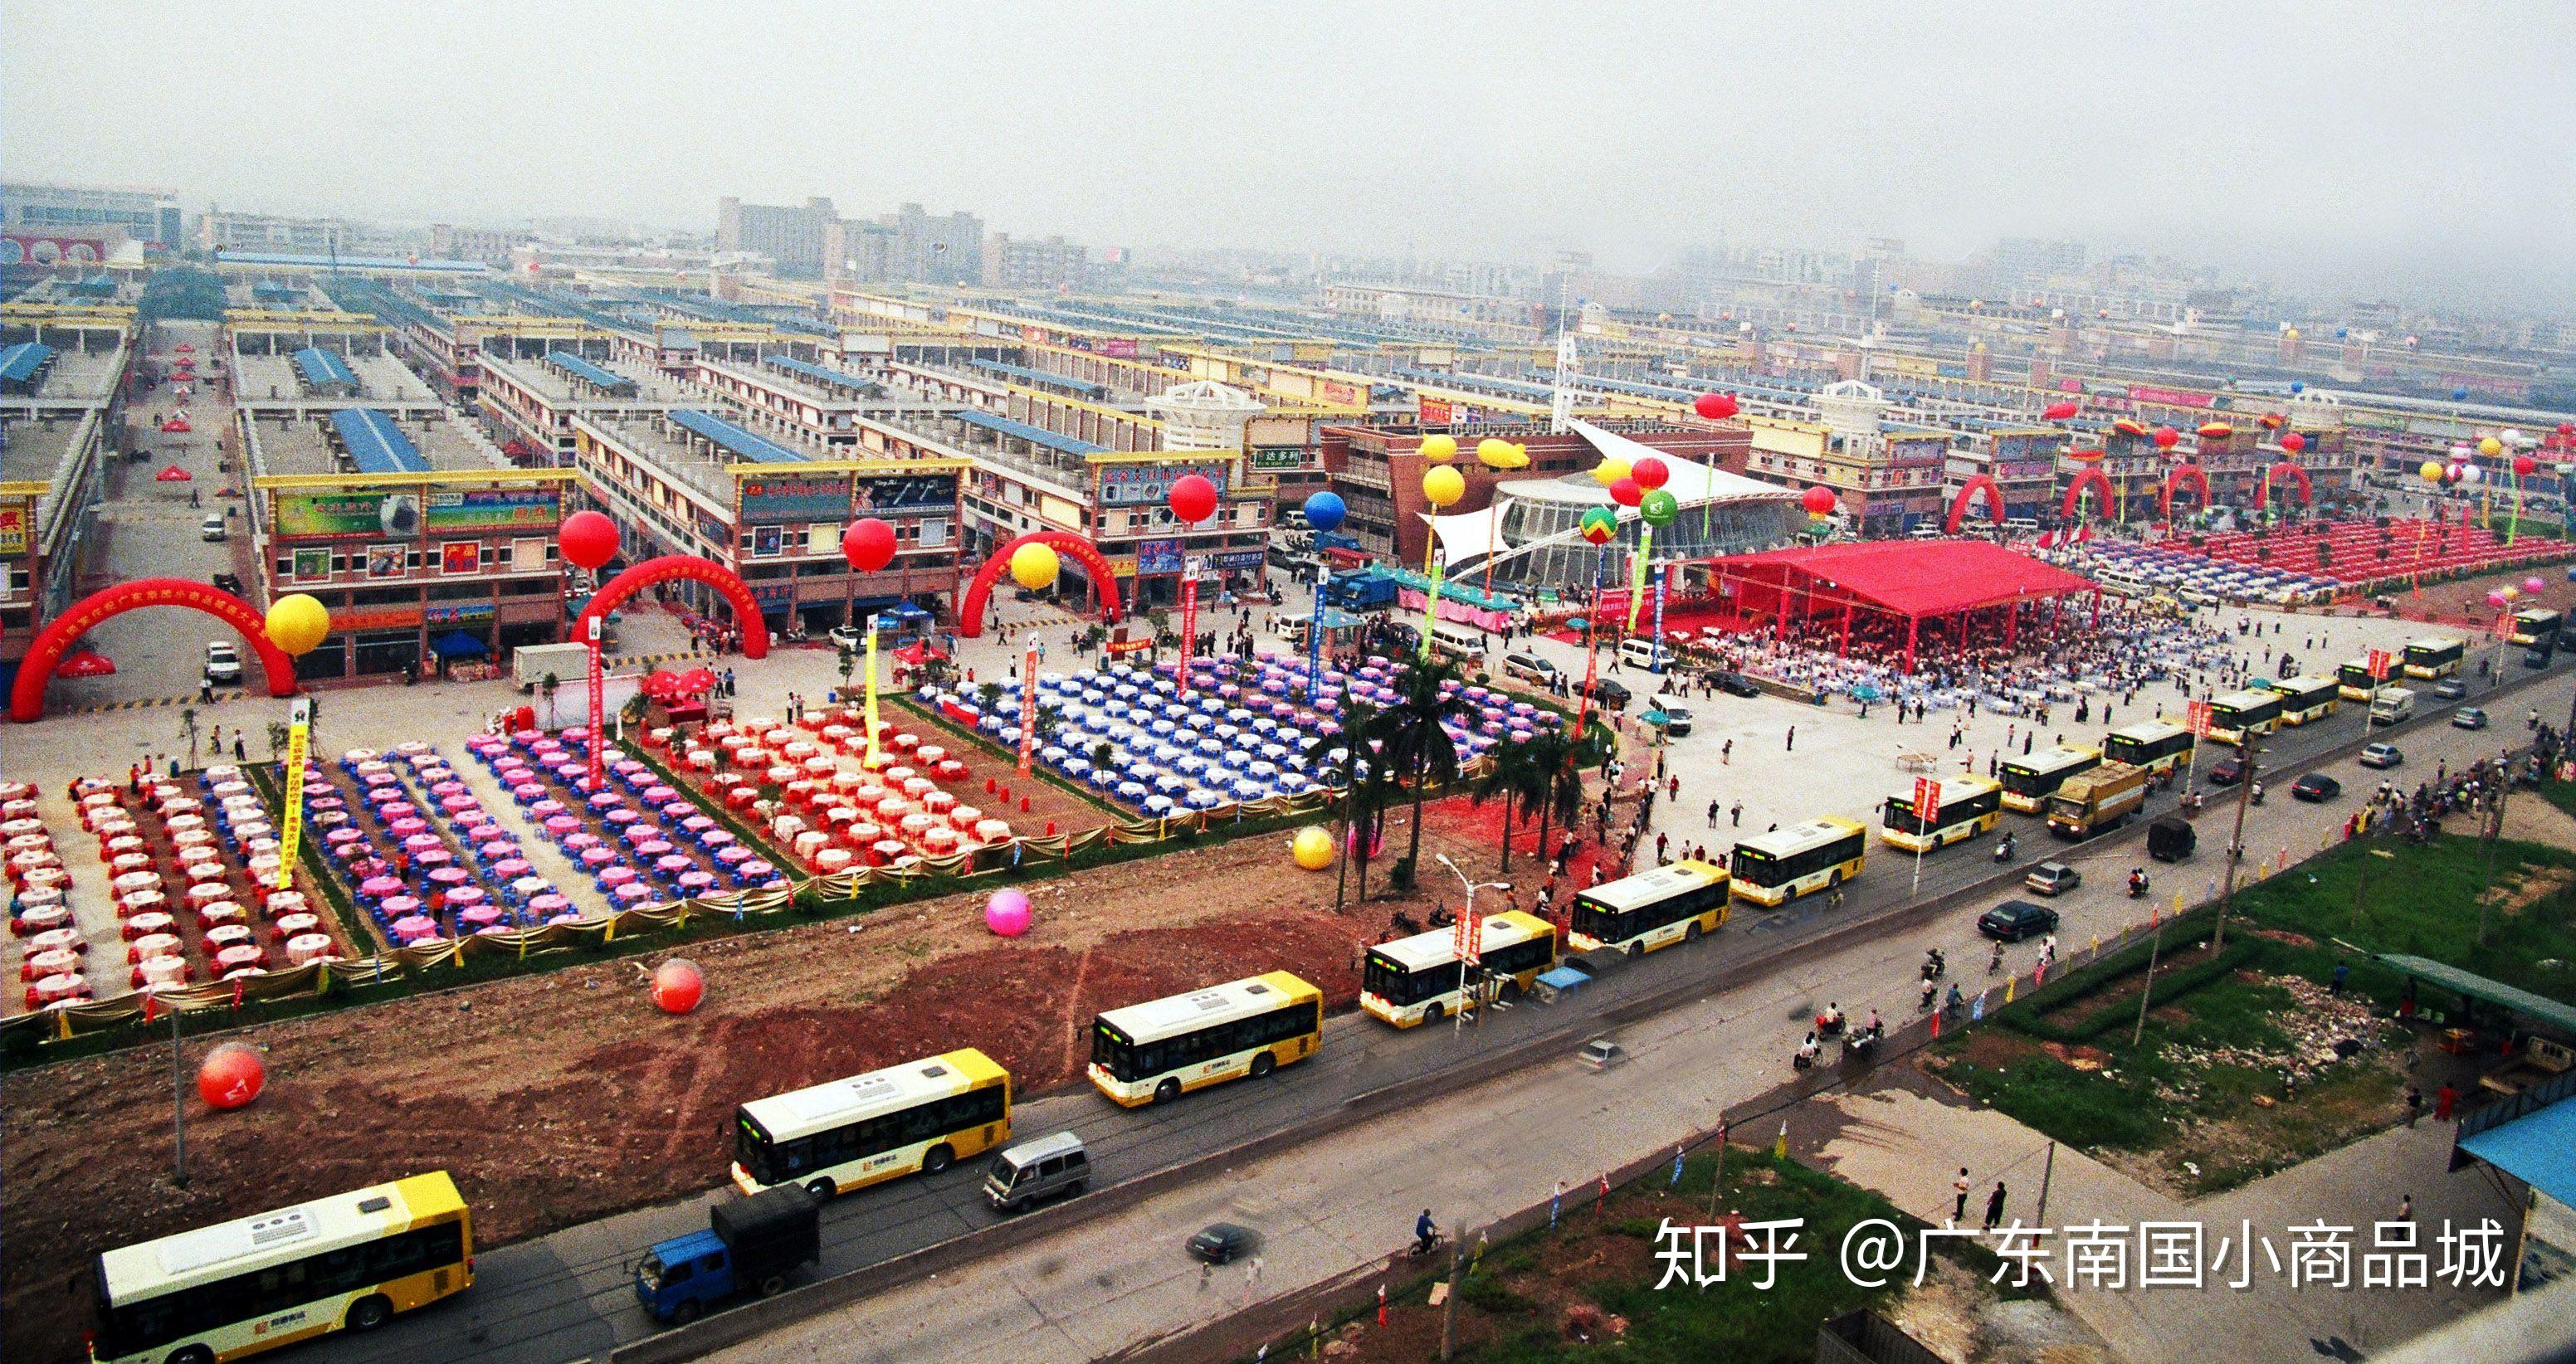 华南地区大型小商品批发市场广东南国小商品城值得一逛